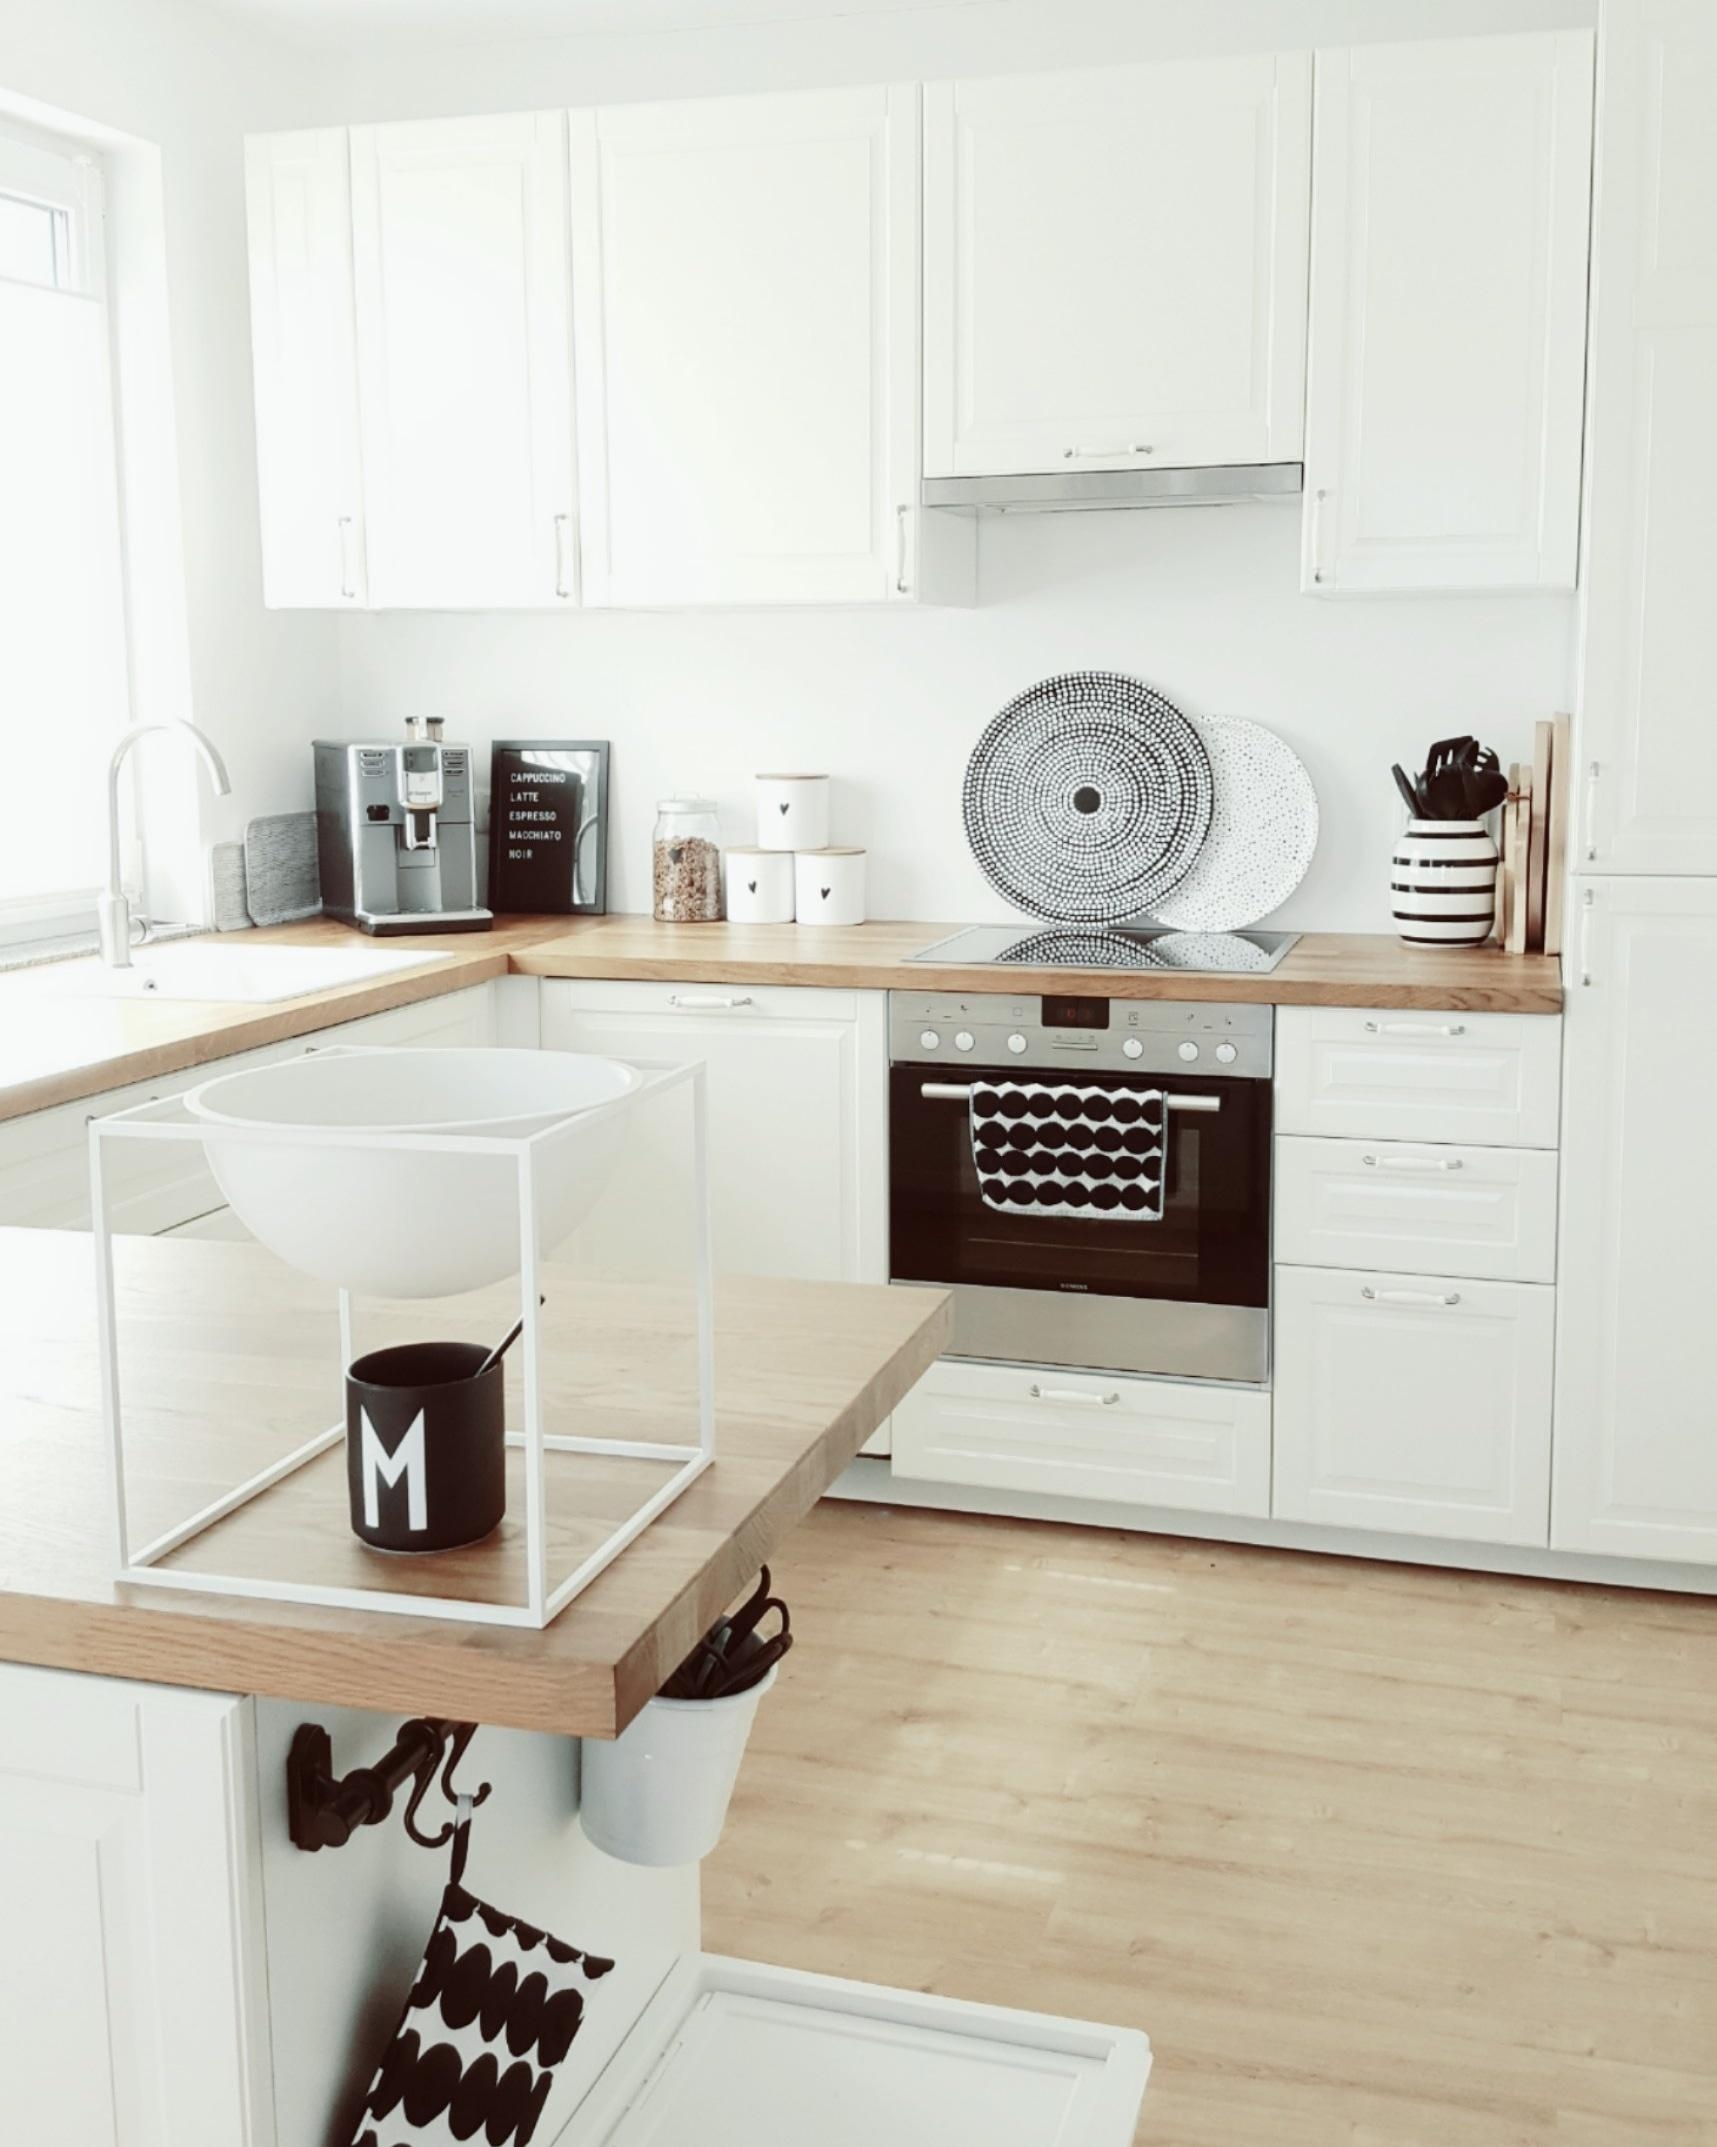 Grosse Küchenliebe ♡
#whiteliving#scandiliving#myhome#scandinaviandesign#mynordicroom#kitchen#küche